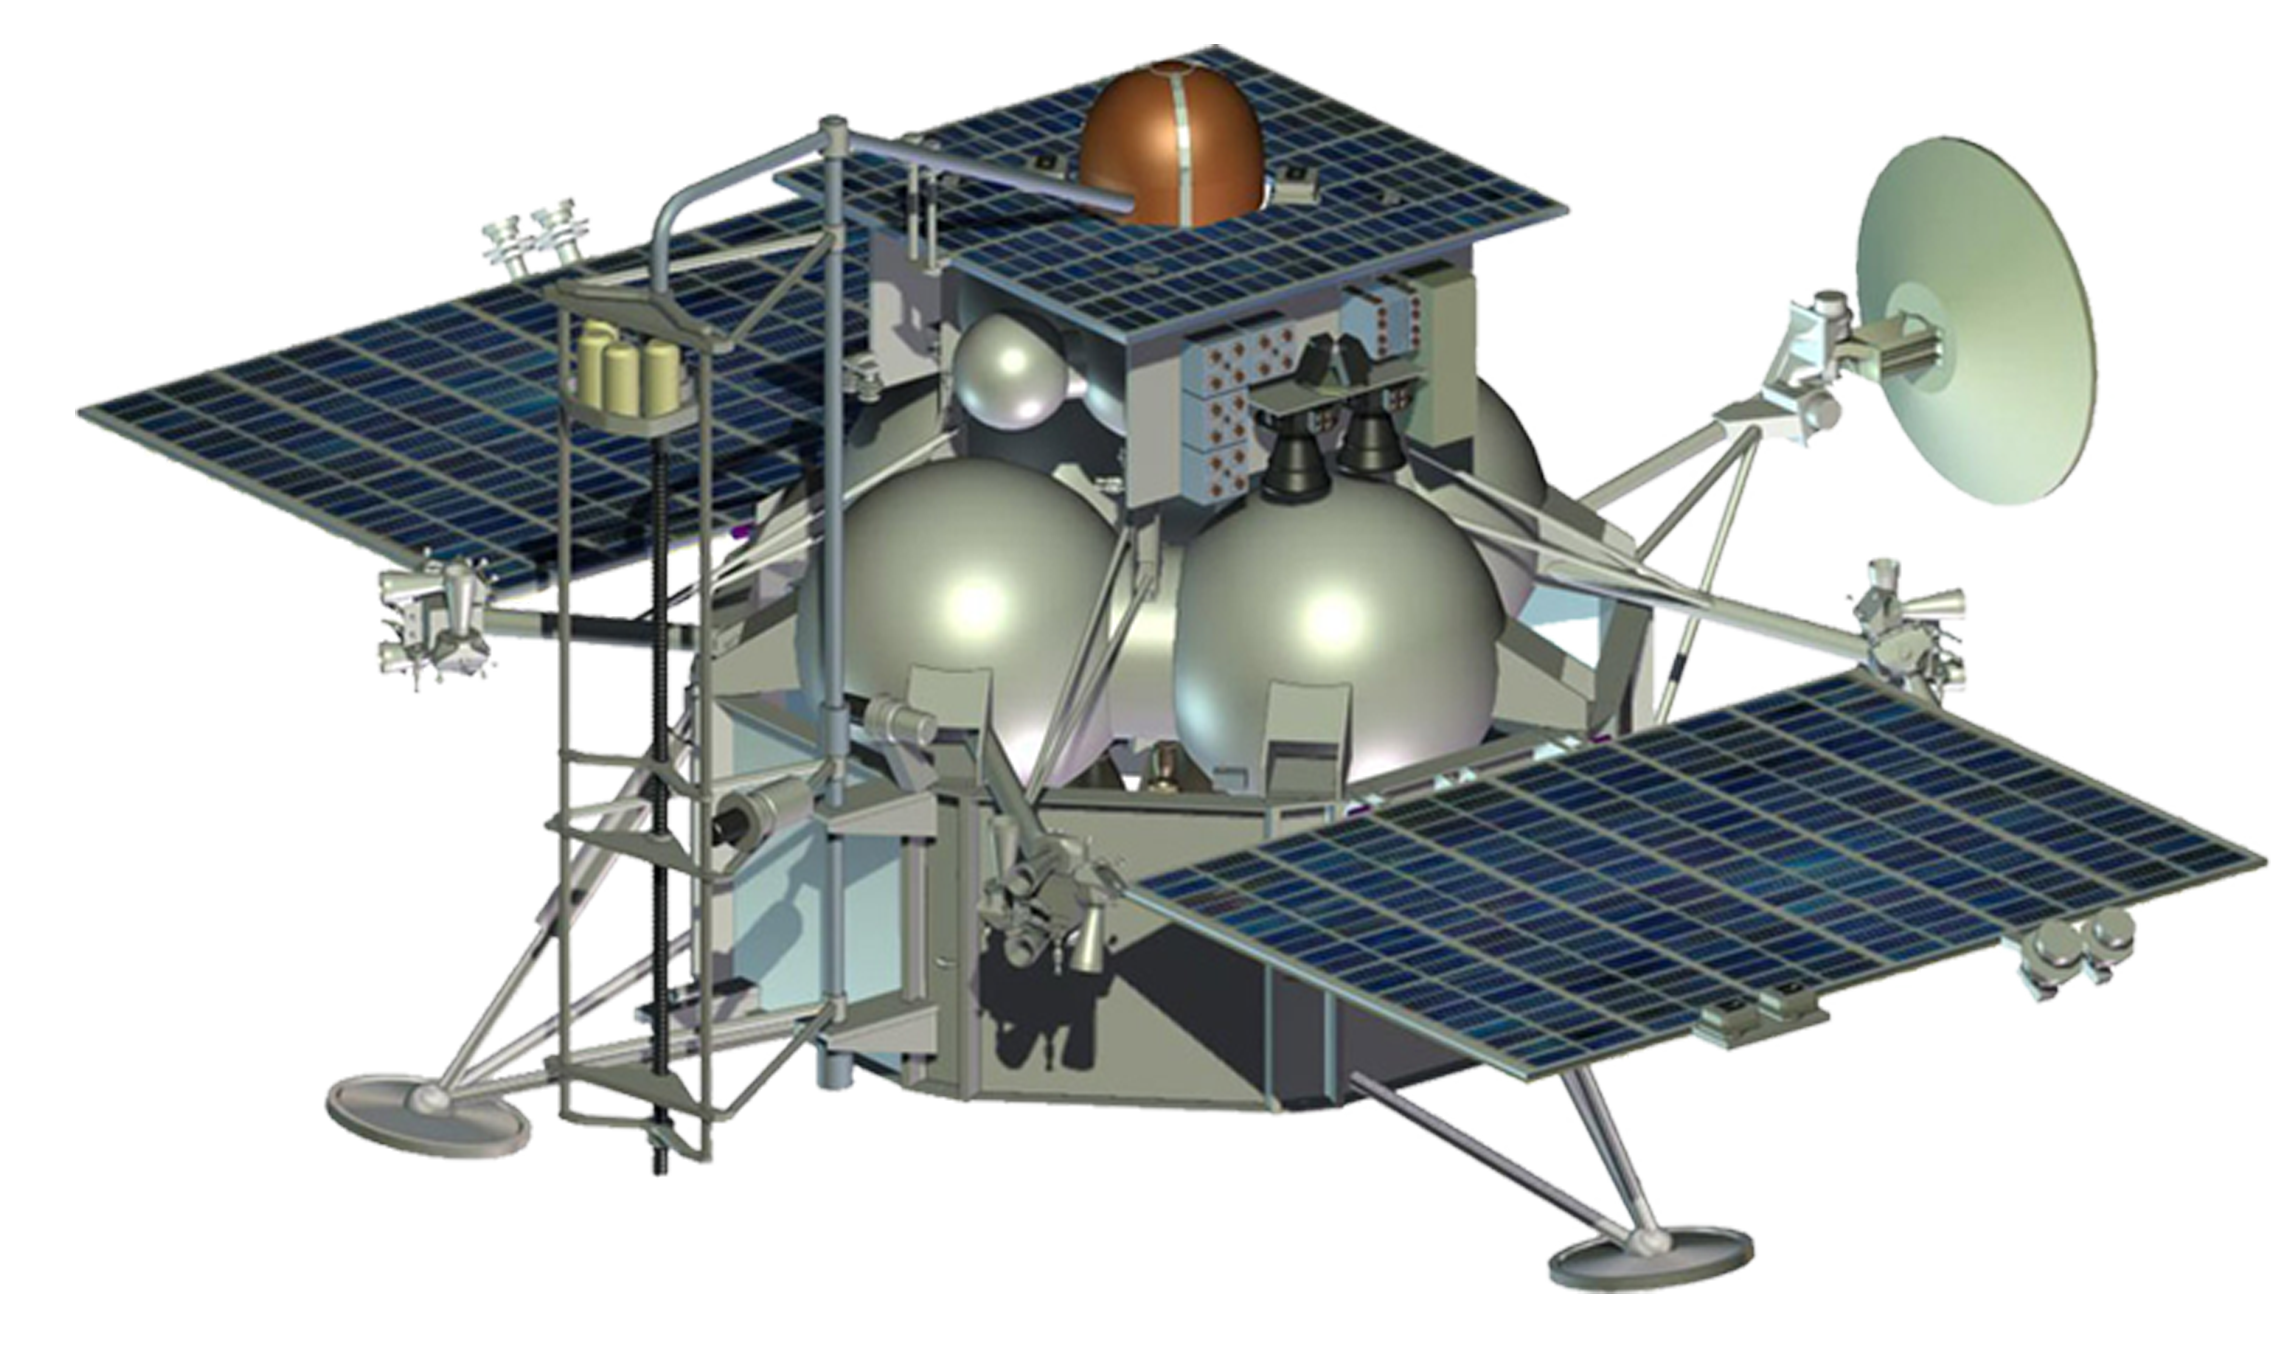 Автоматическая межпланетная станция "Фобос-Грунт"